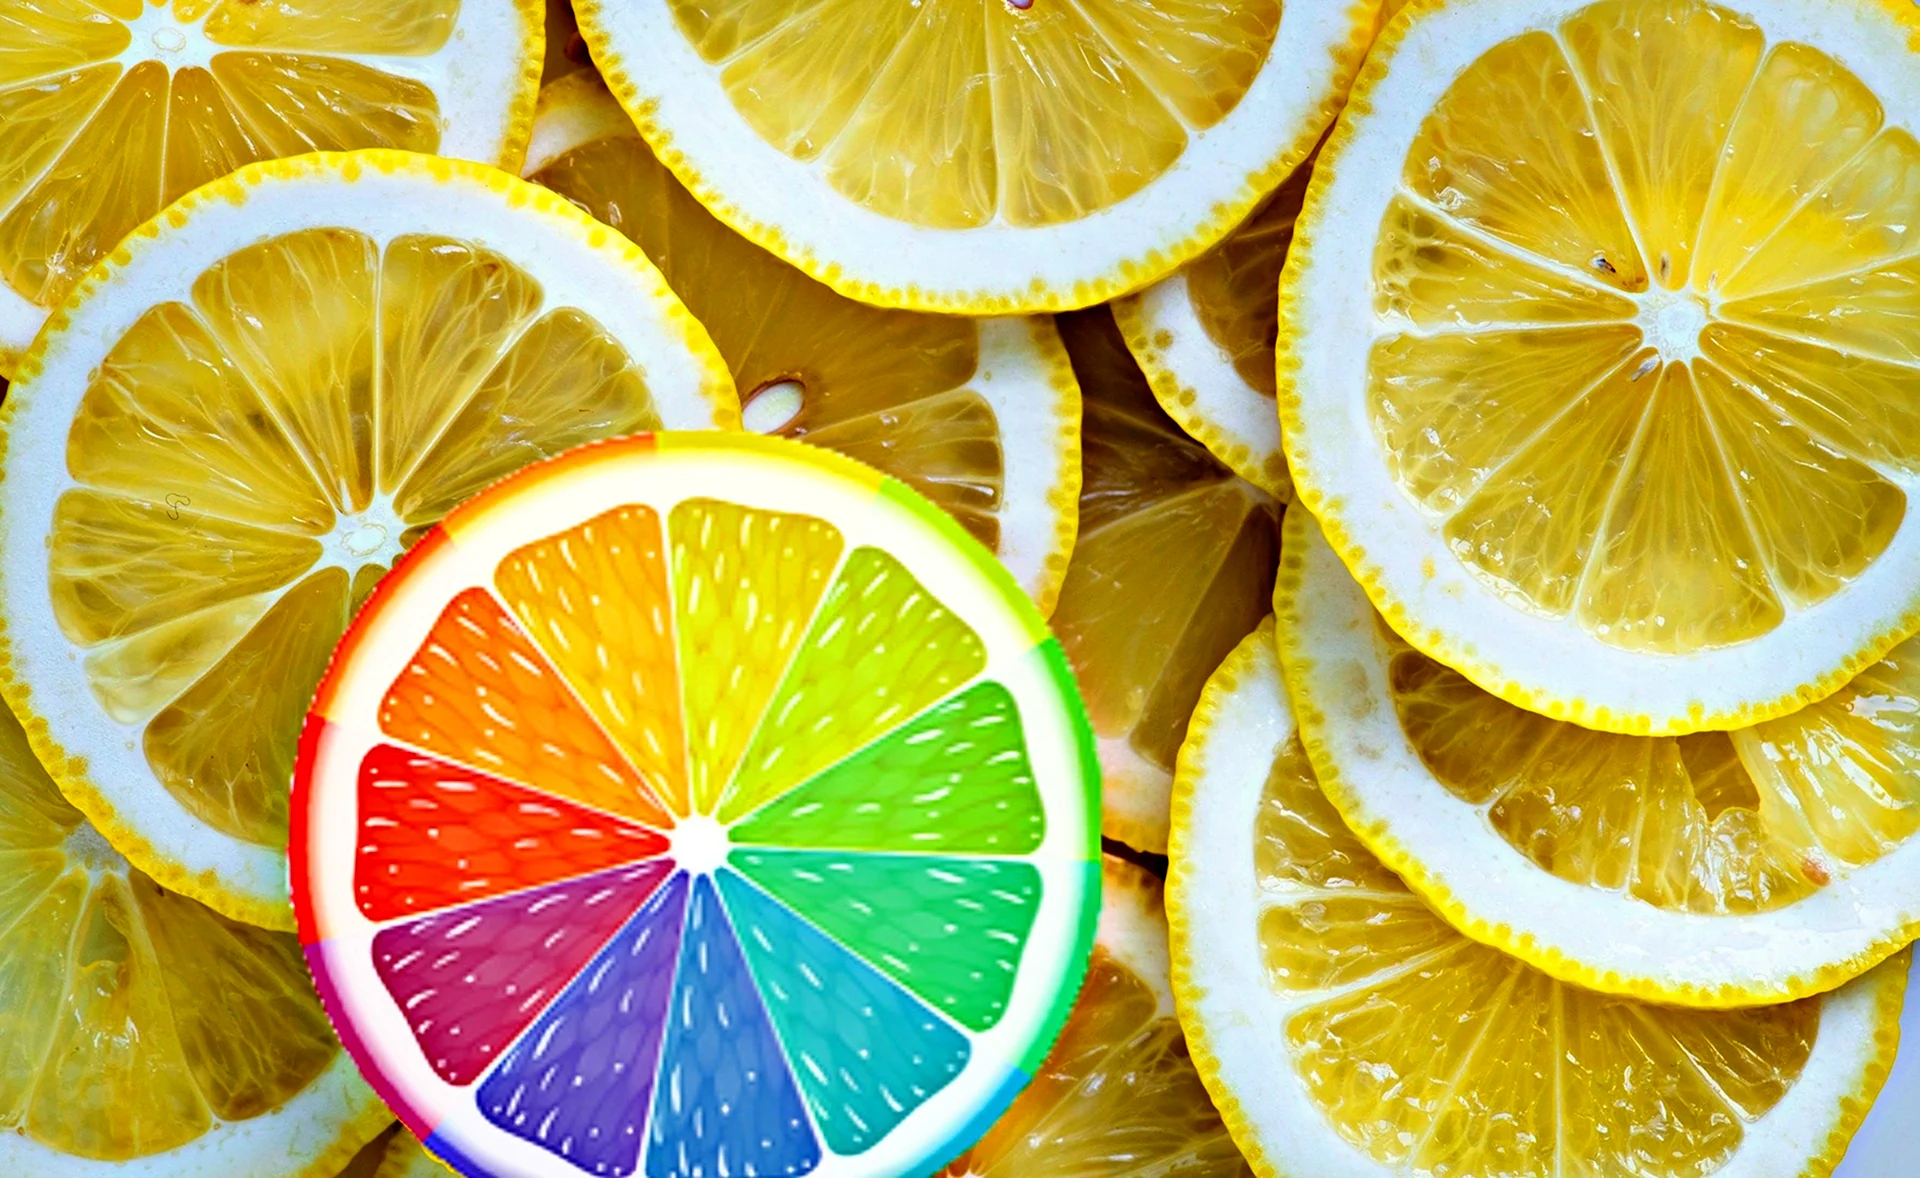 Разноцветный лимон